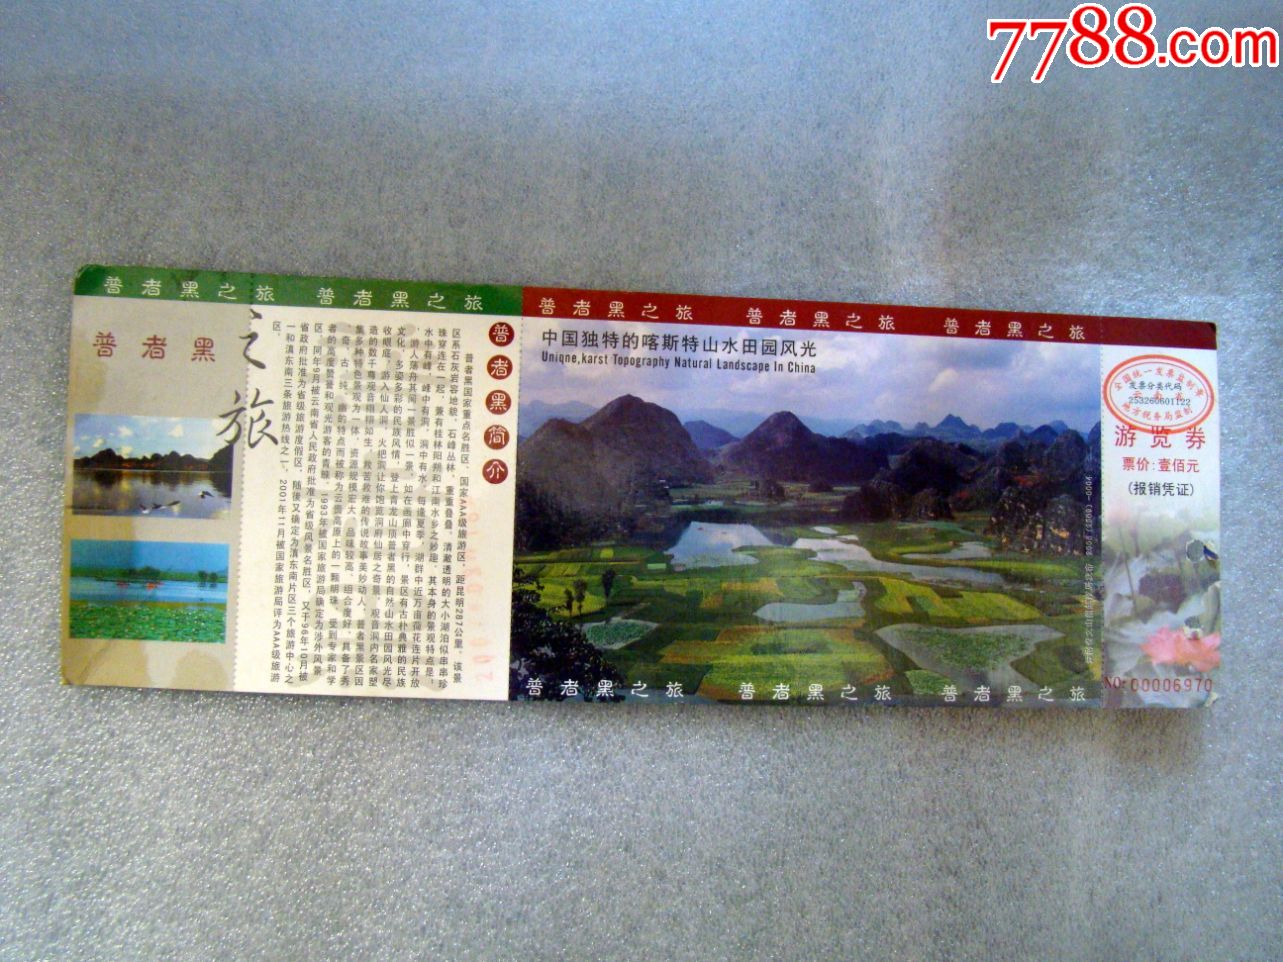 普者黑之旅,中国独特的客斯特山水田园风光----邮资票,旅游景点门票